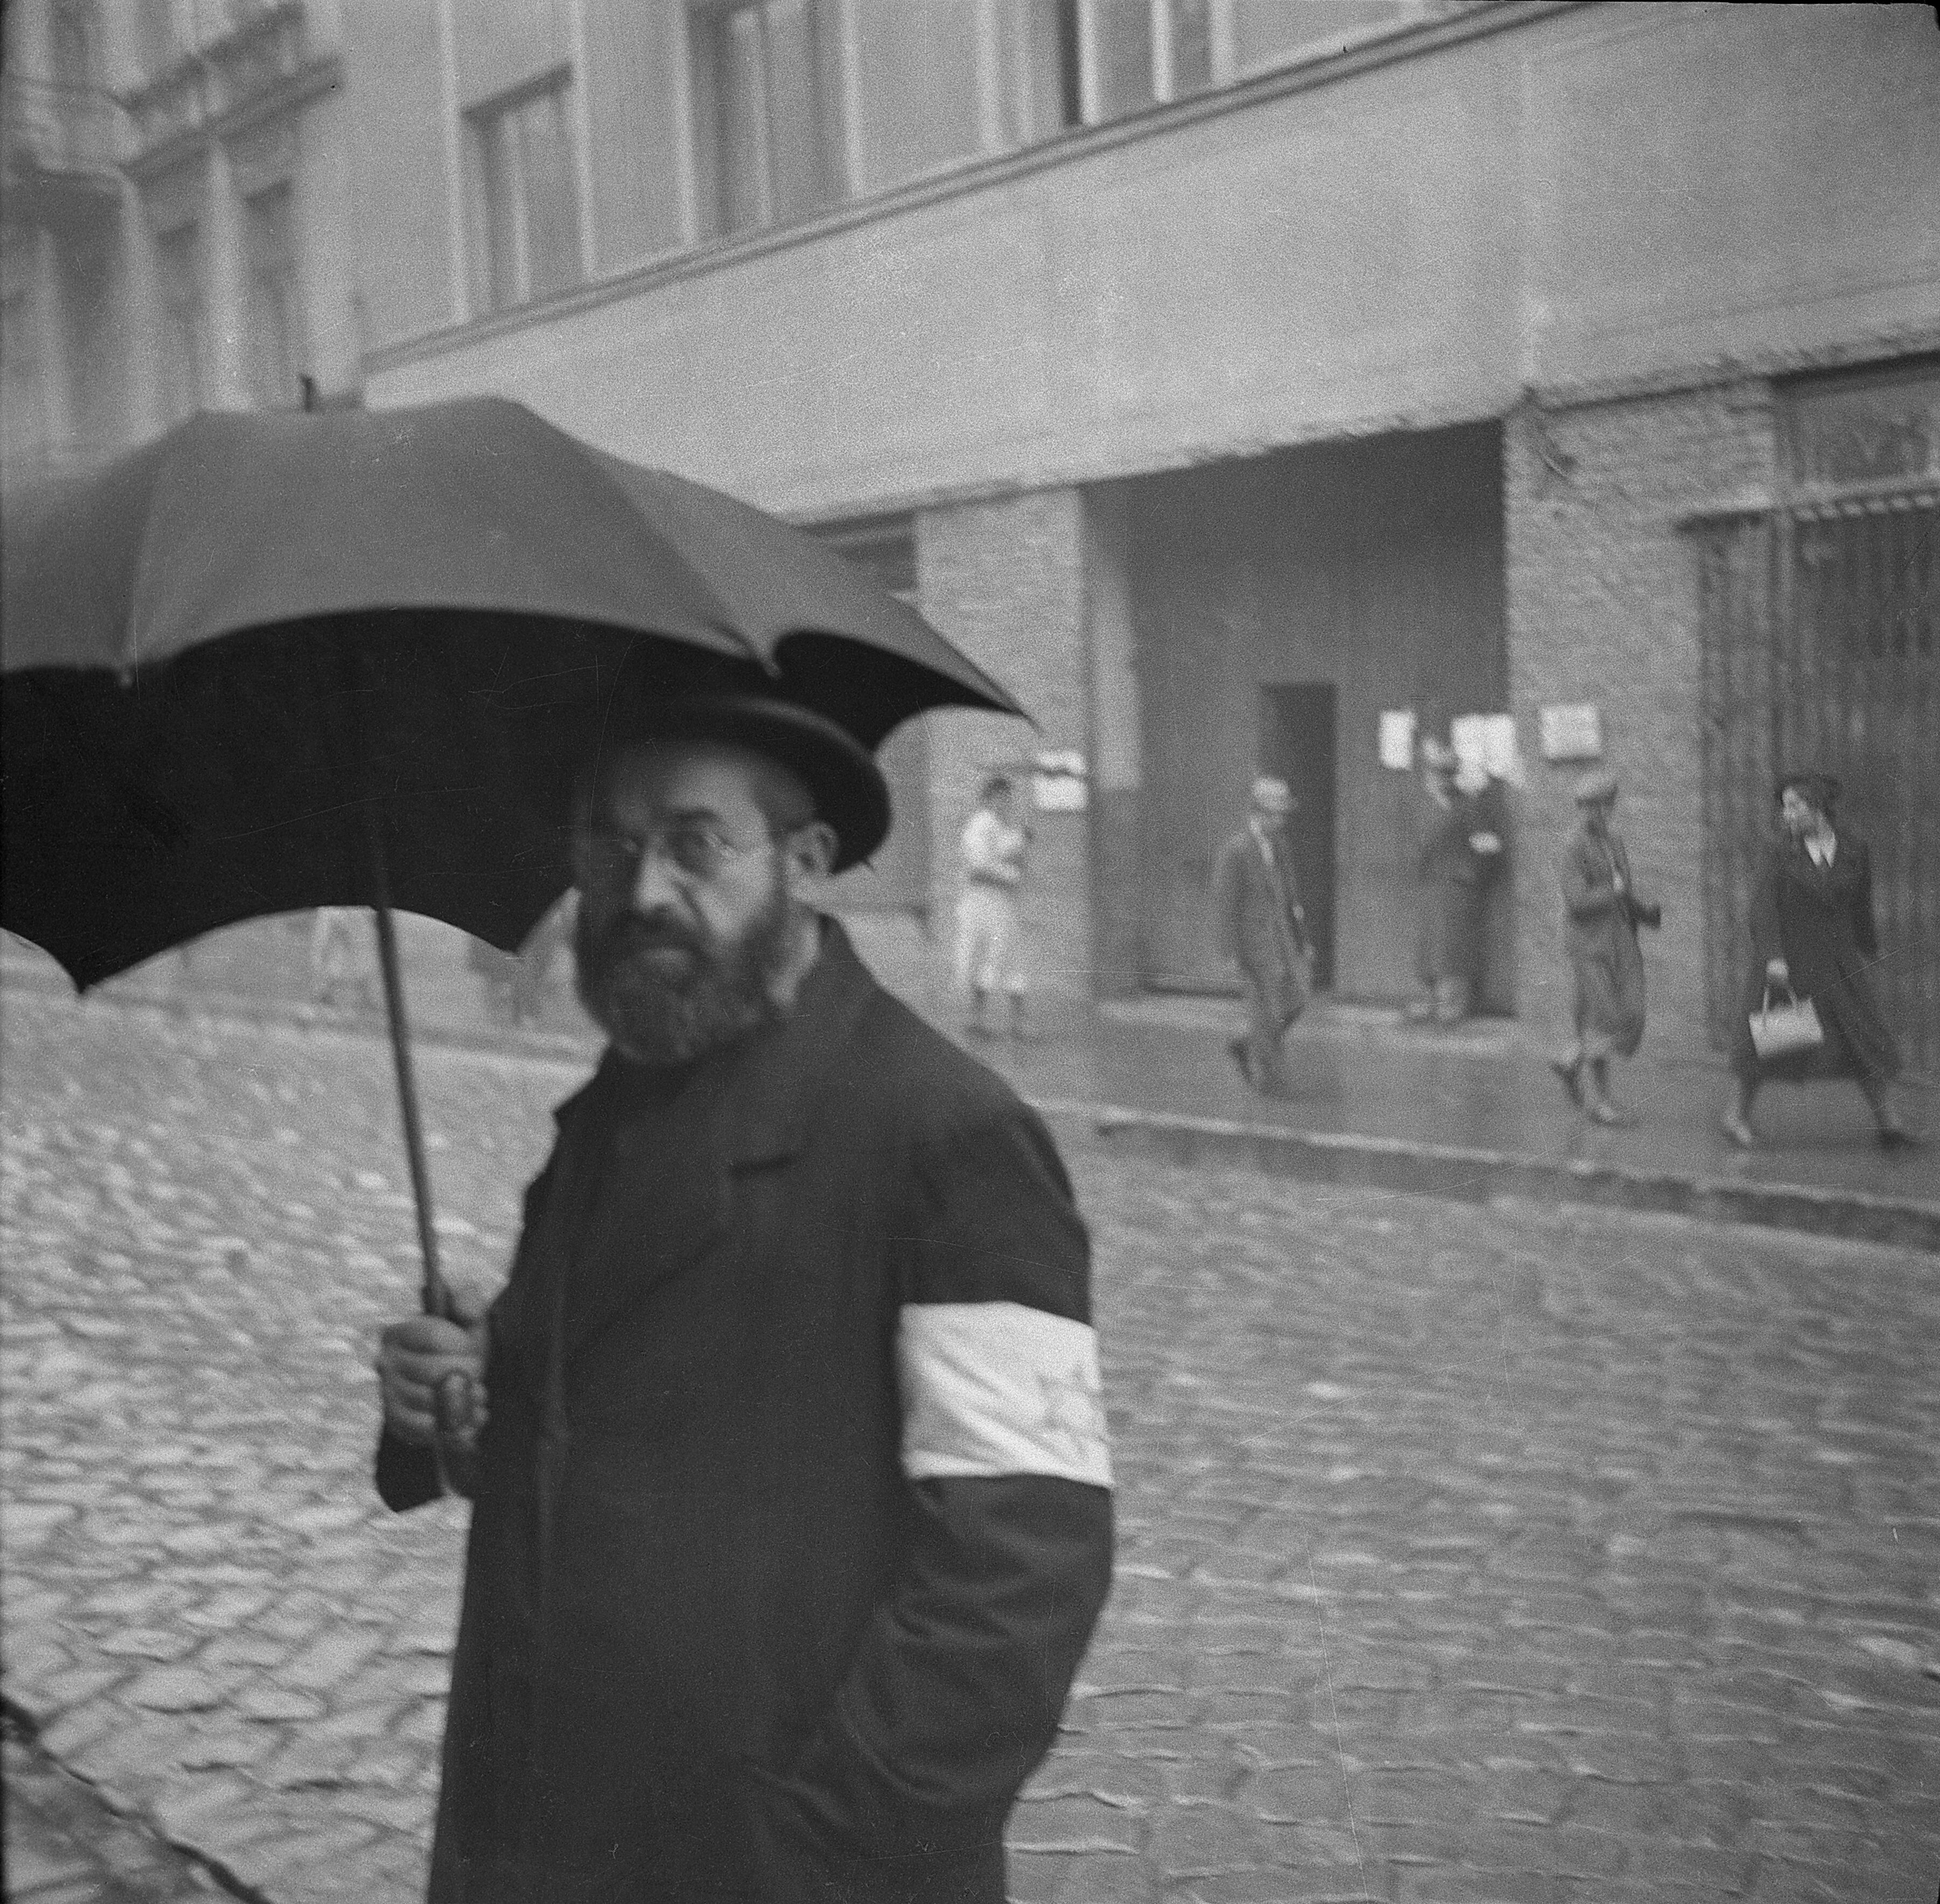 Un ciudadano judío con el brazalete de la estrella de David mira fijamente a la cámara al ser retratado durante la ocupación nazi de la ciudad de Oświęcim